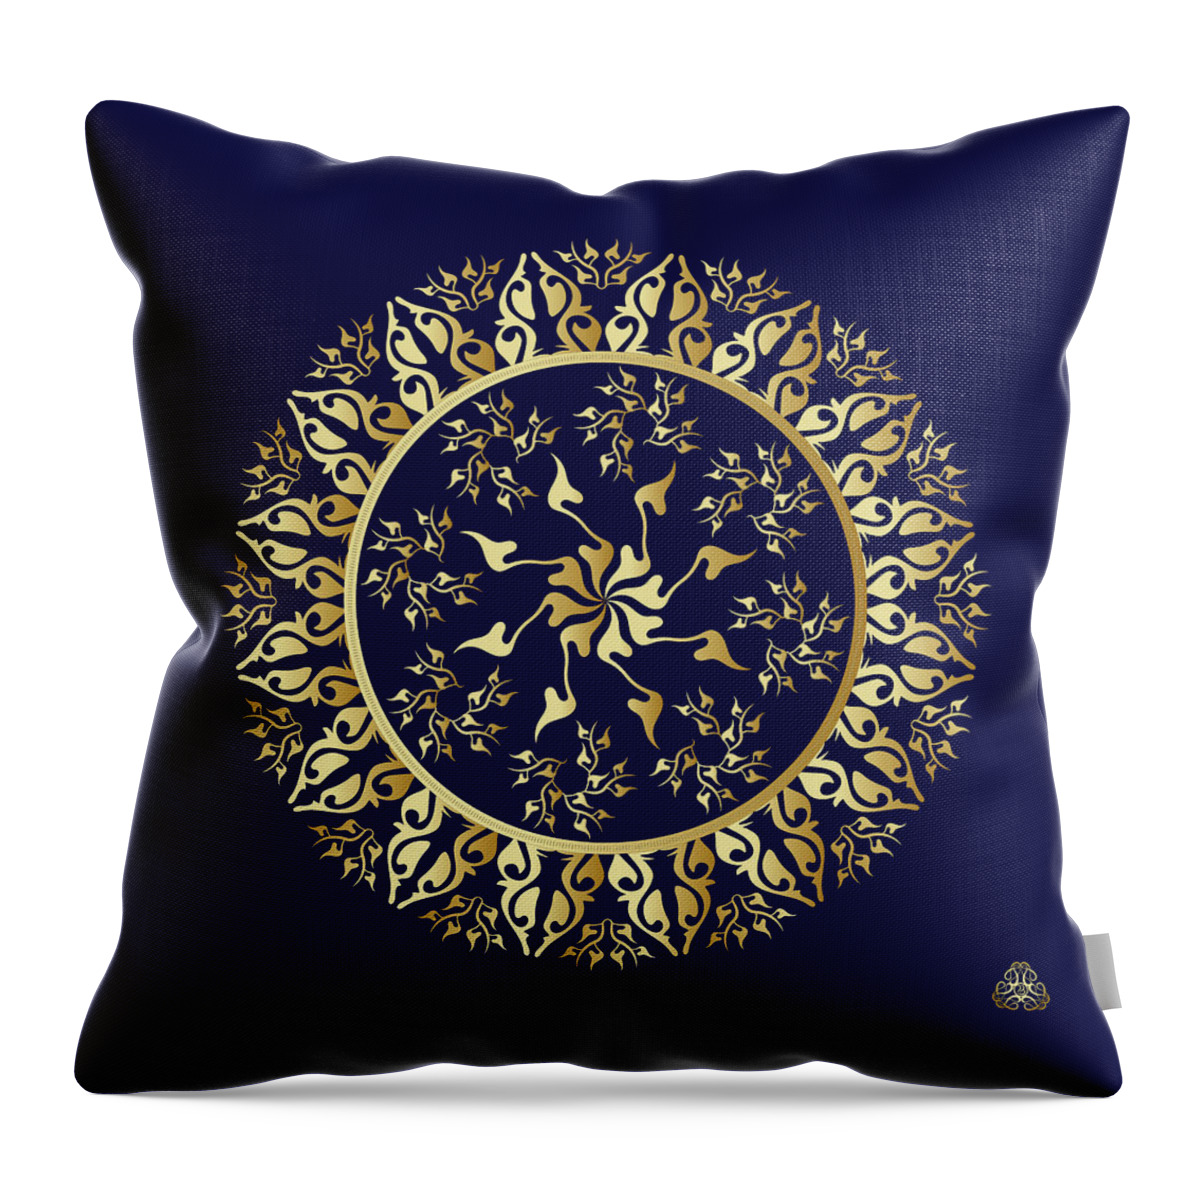 Mandala Throw Pillow featuring the digital art Kuklos No 4350 by Alan Bennington